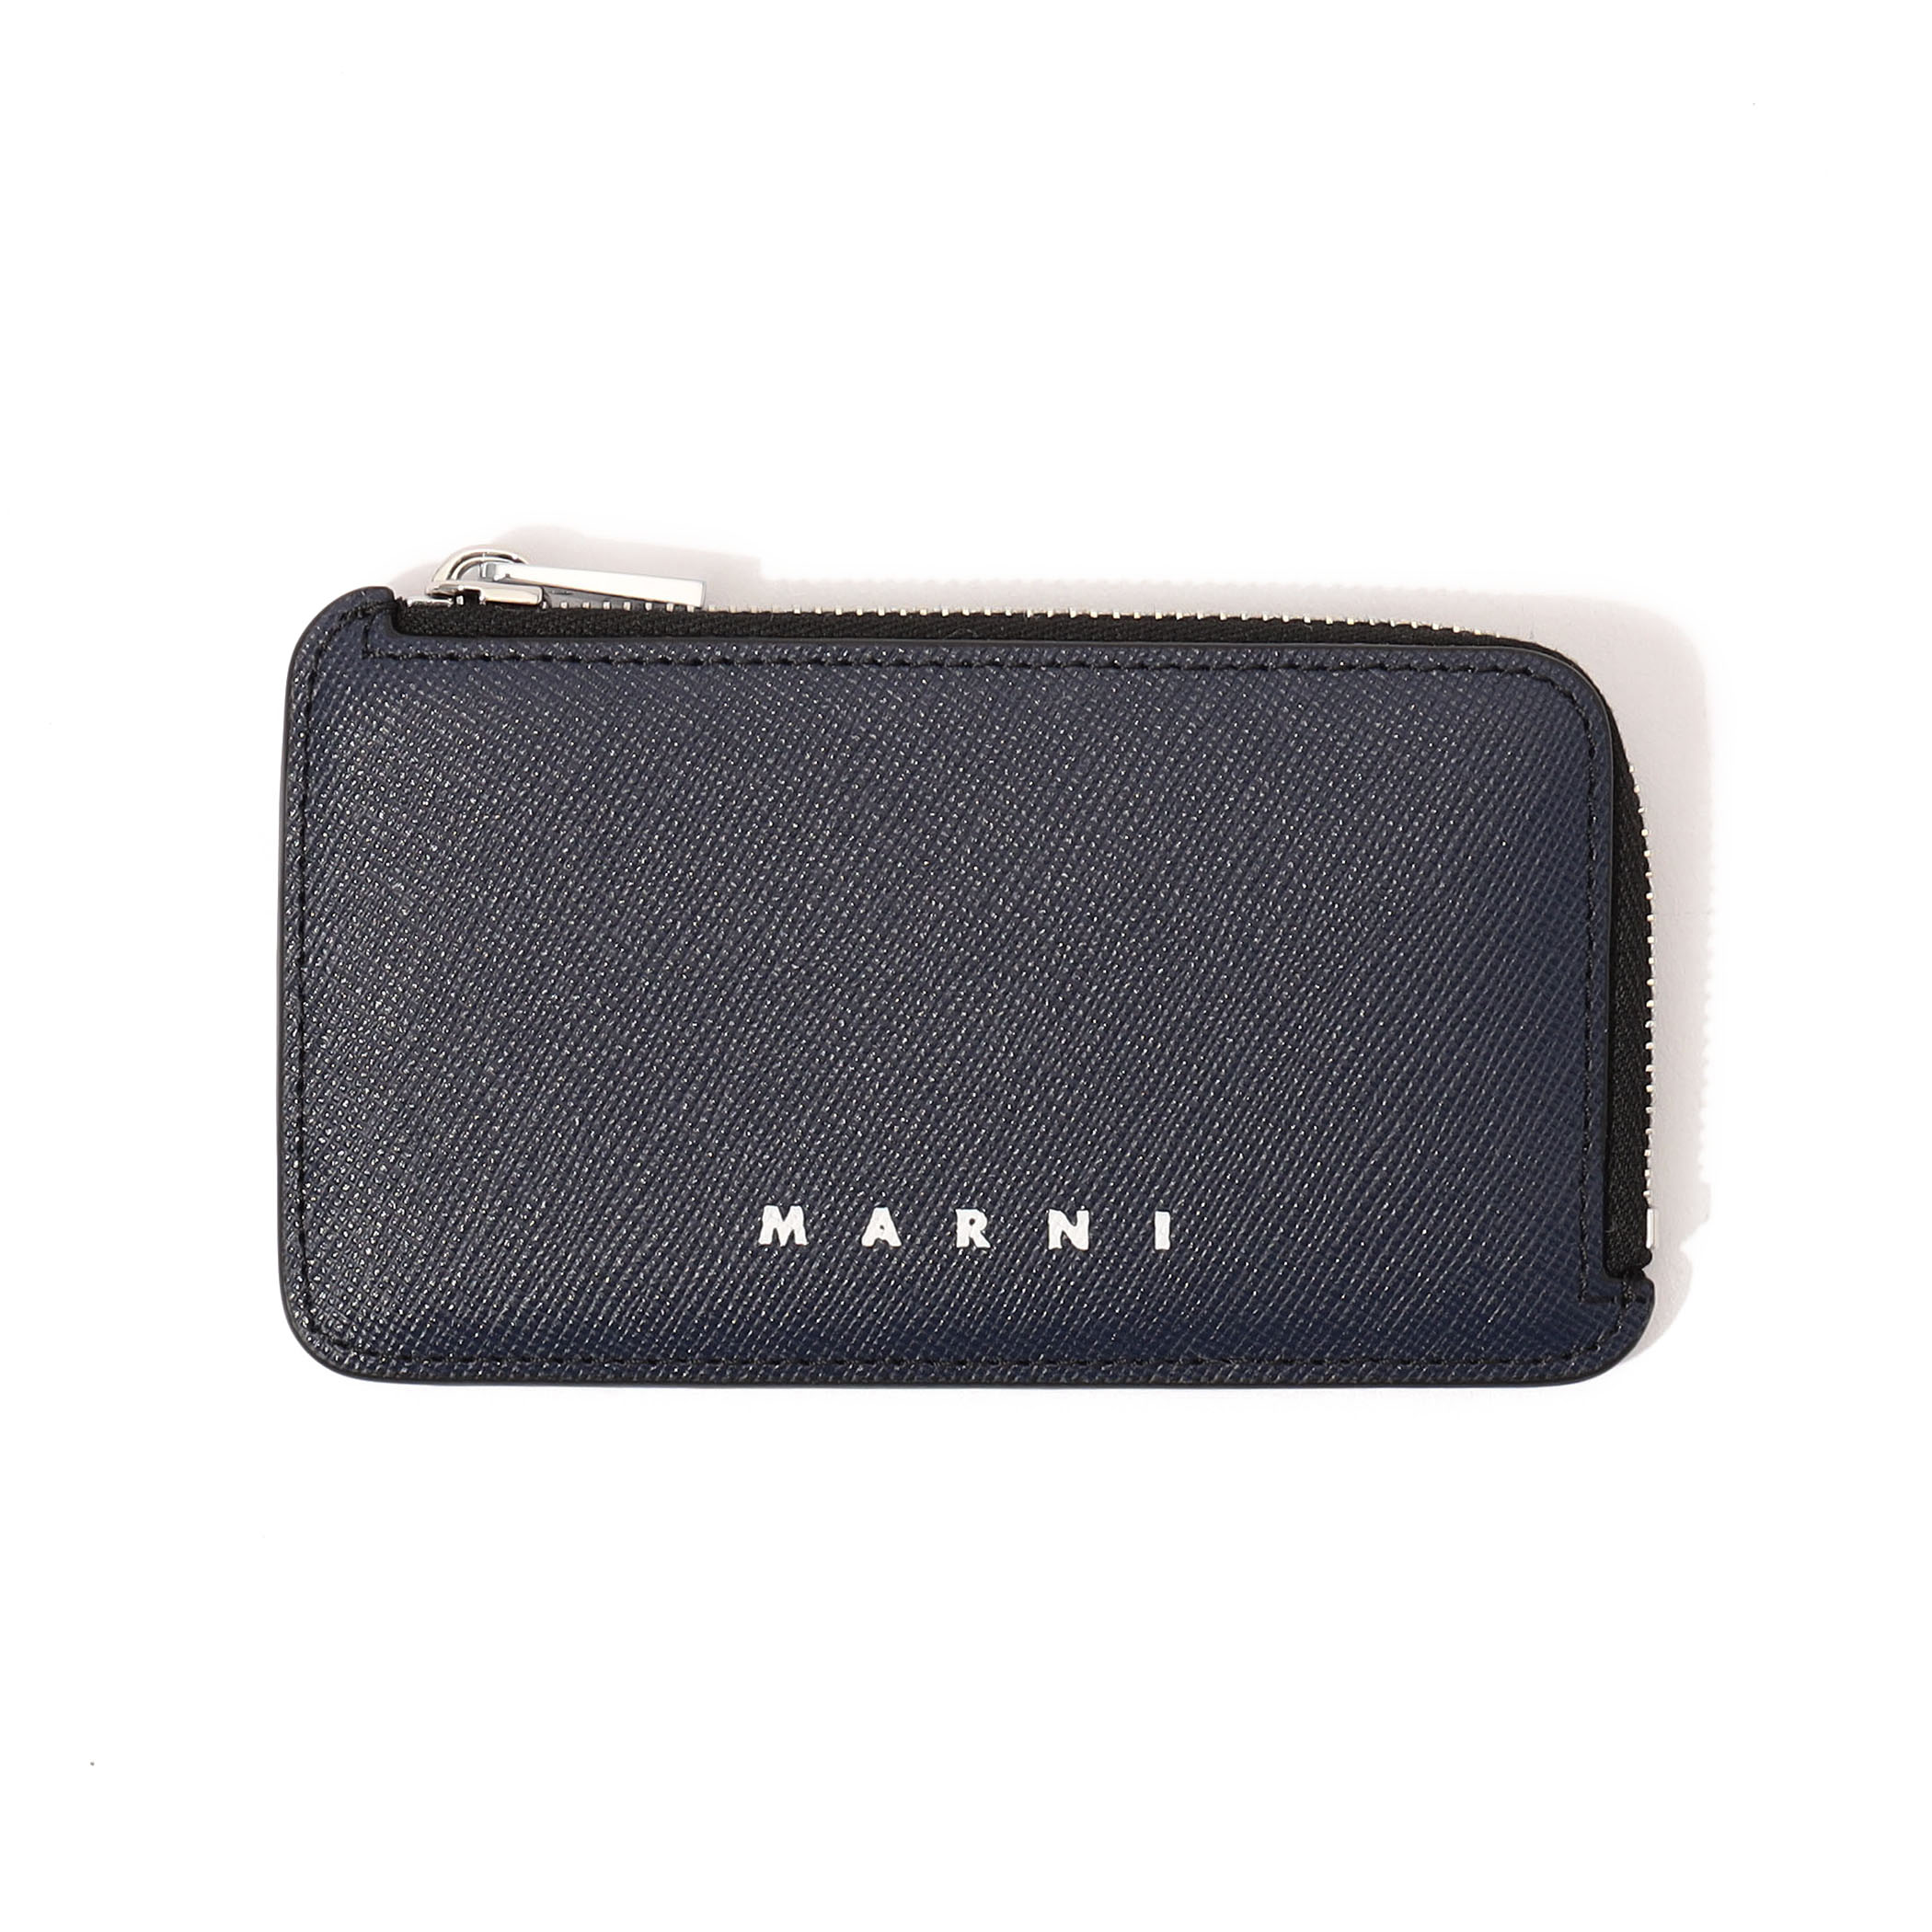 MARNI COIN CARD HOLDER カードケース